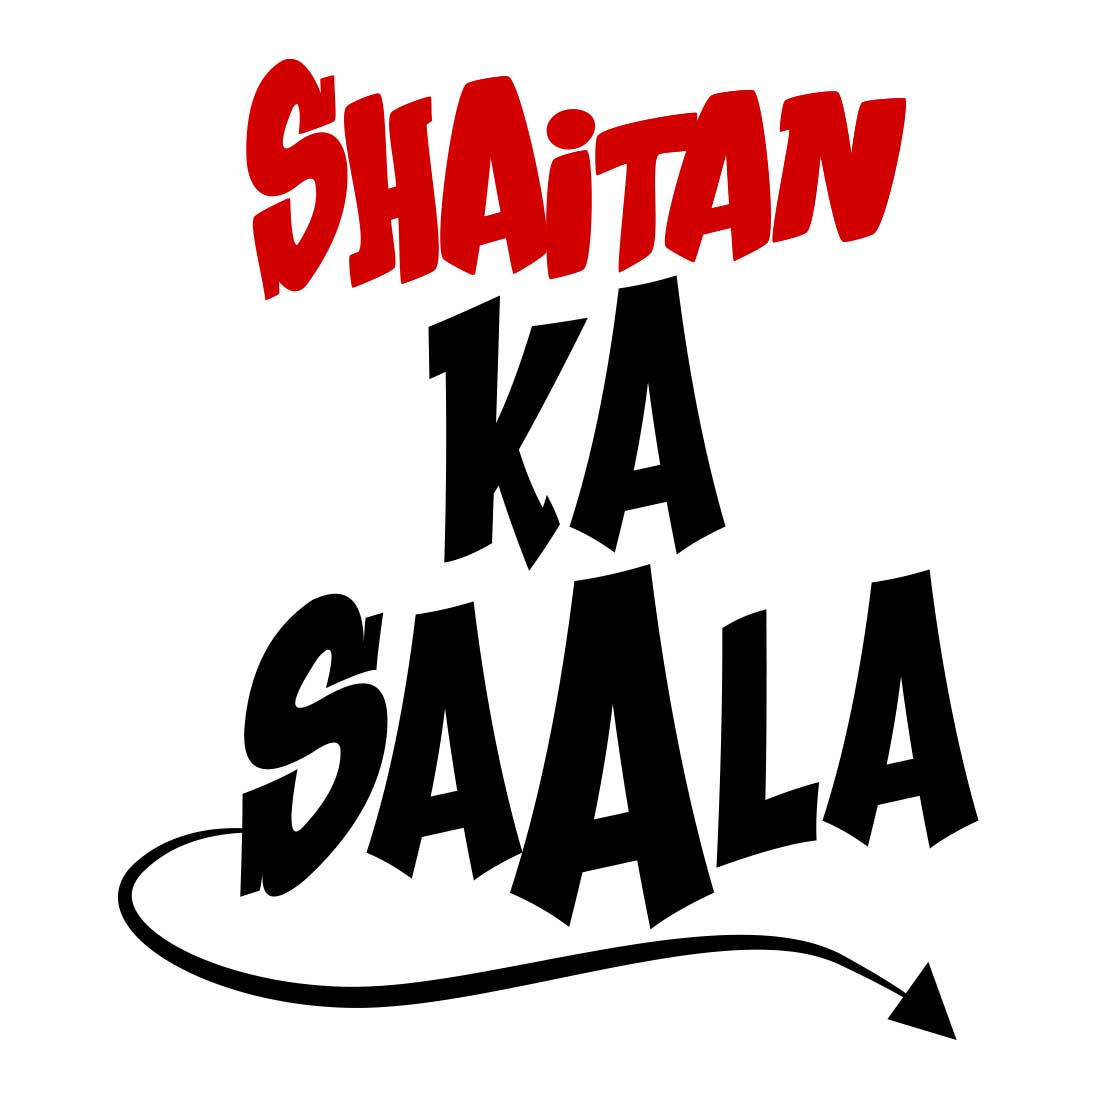 Shaitan Ka Saala White Men T-Shirt